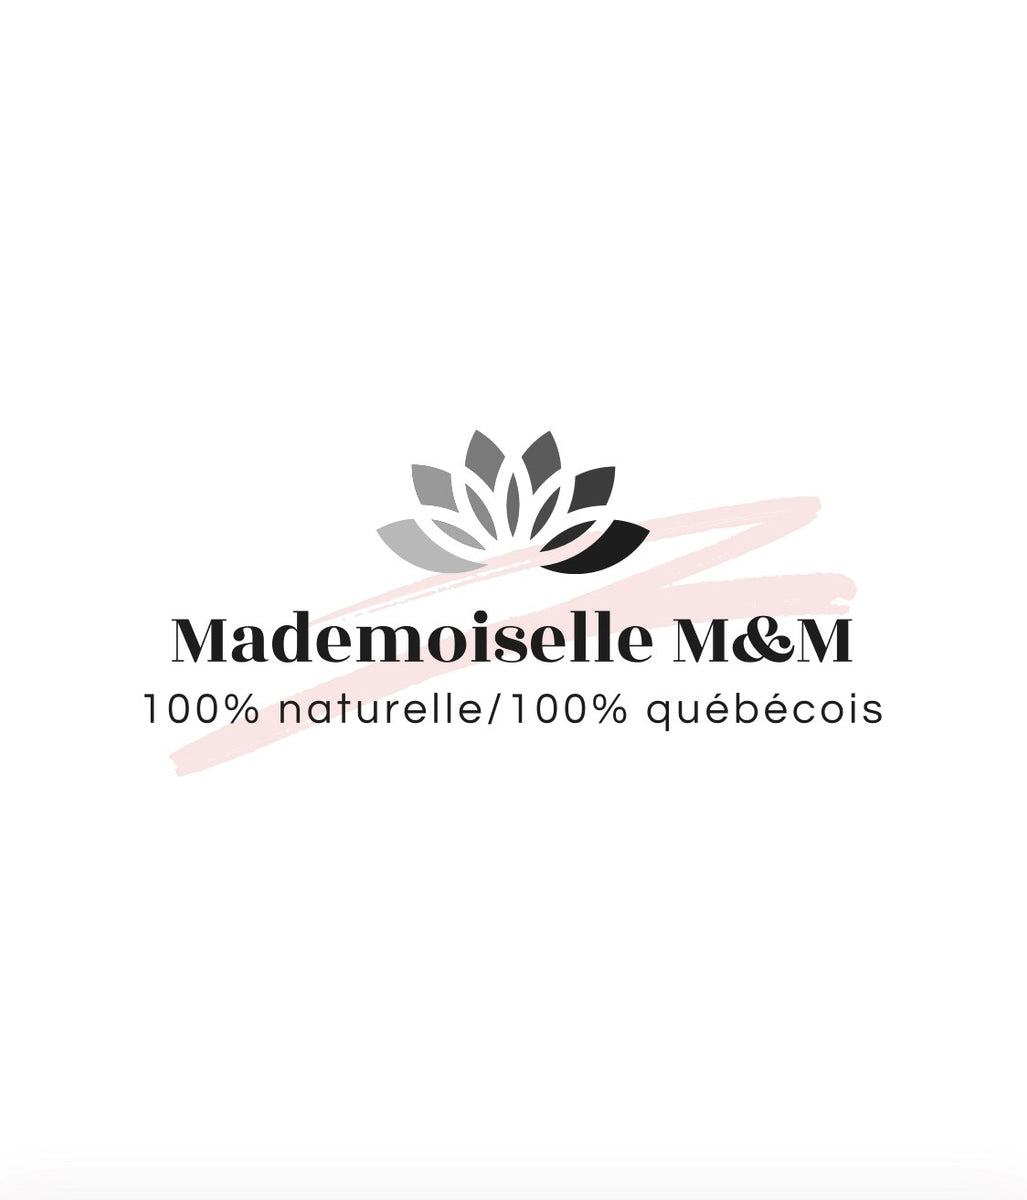 Mademoiselle M&M